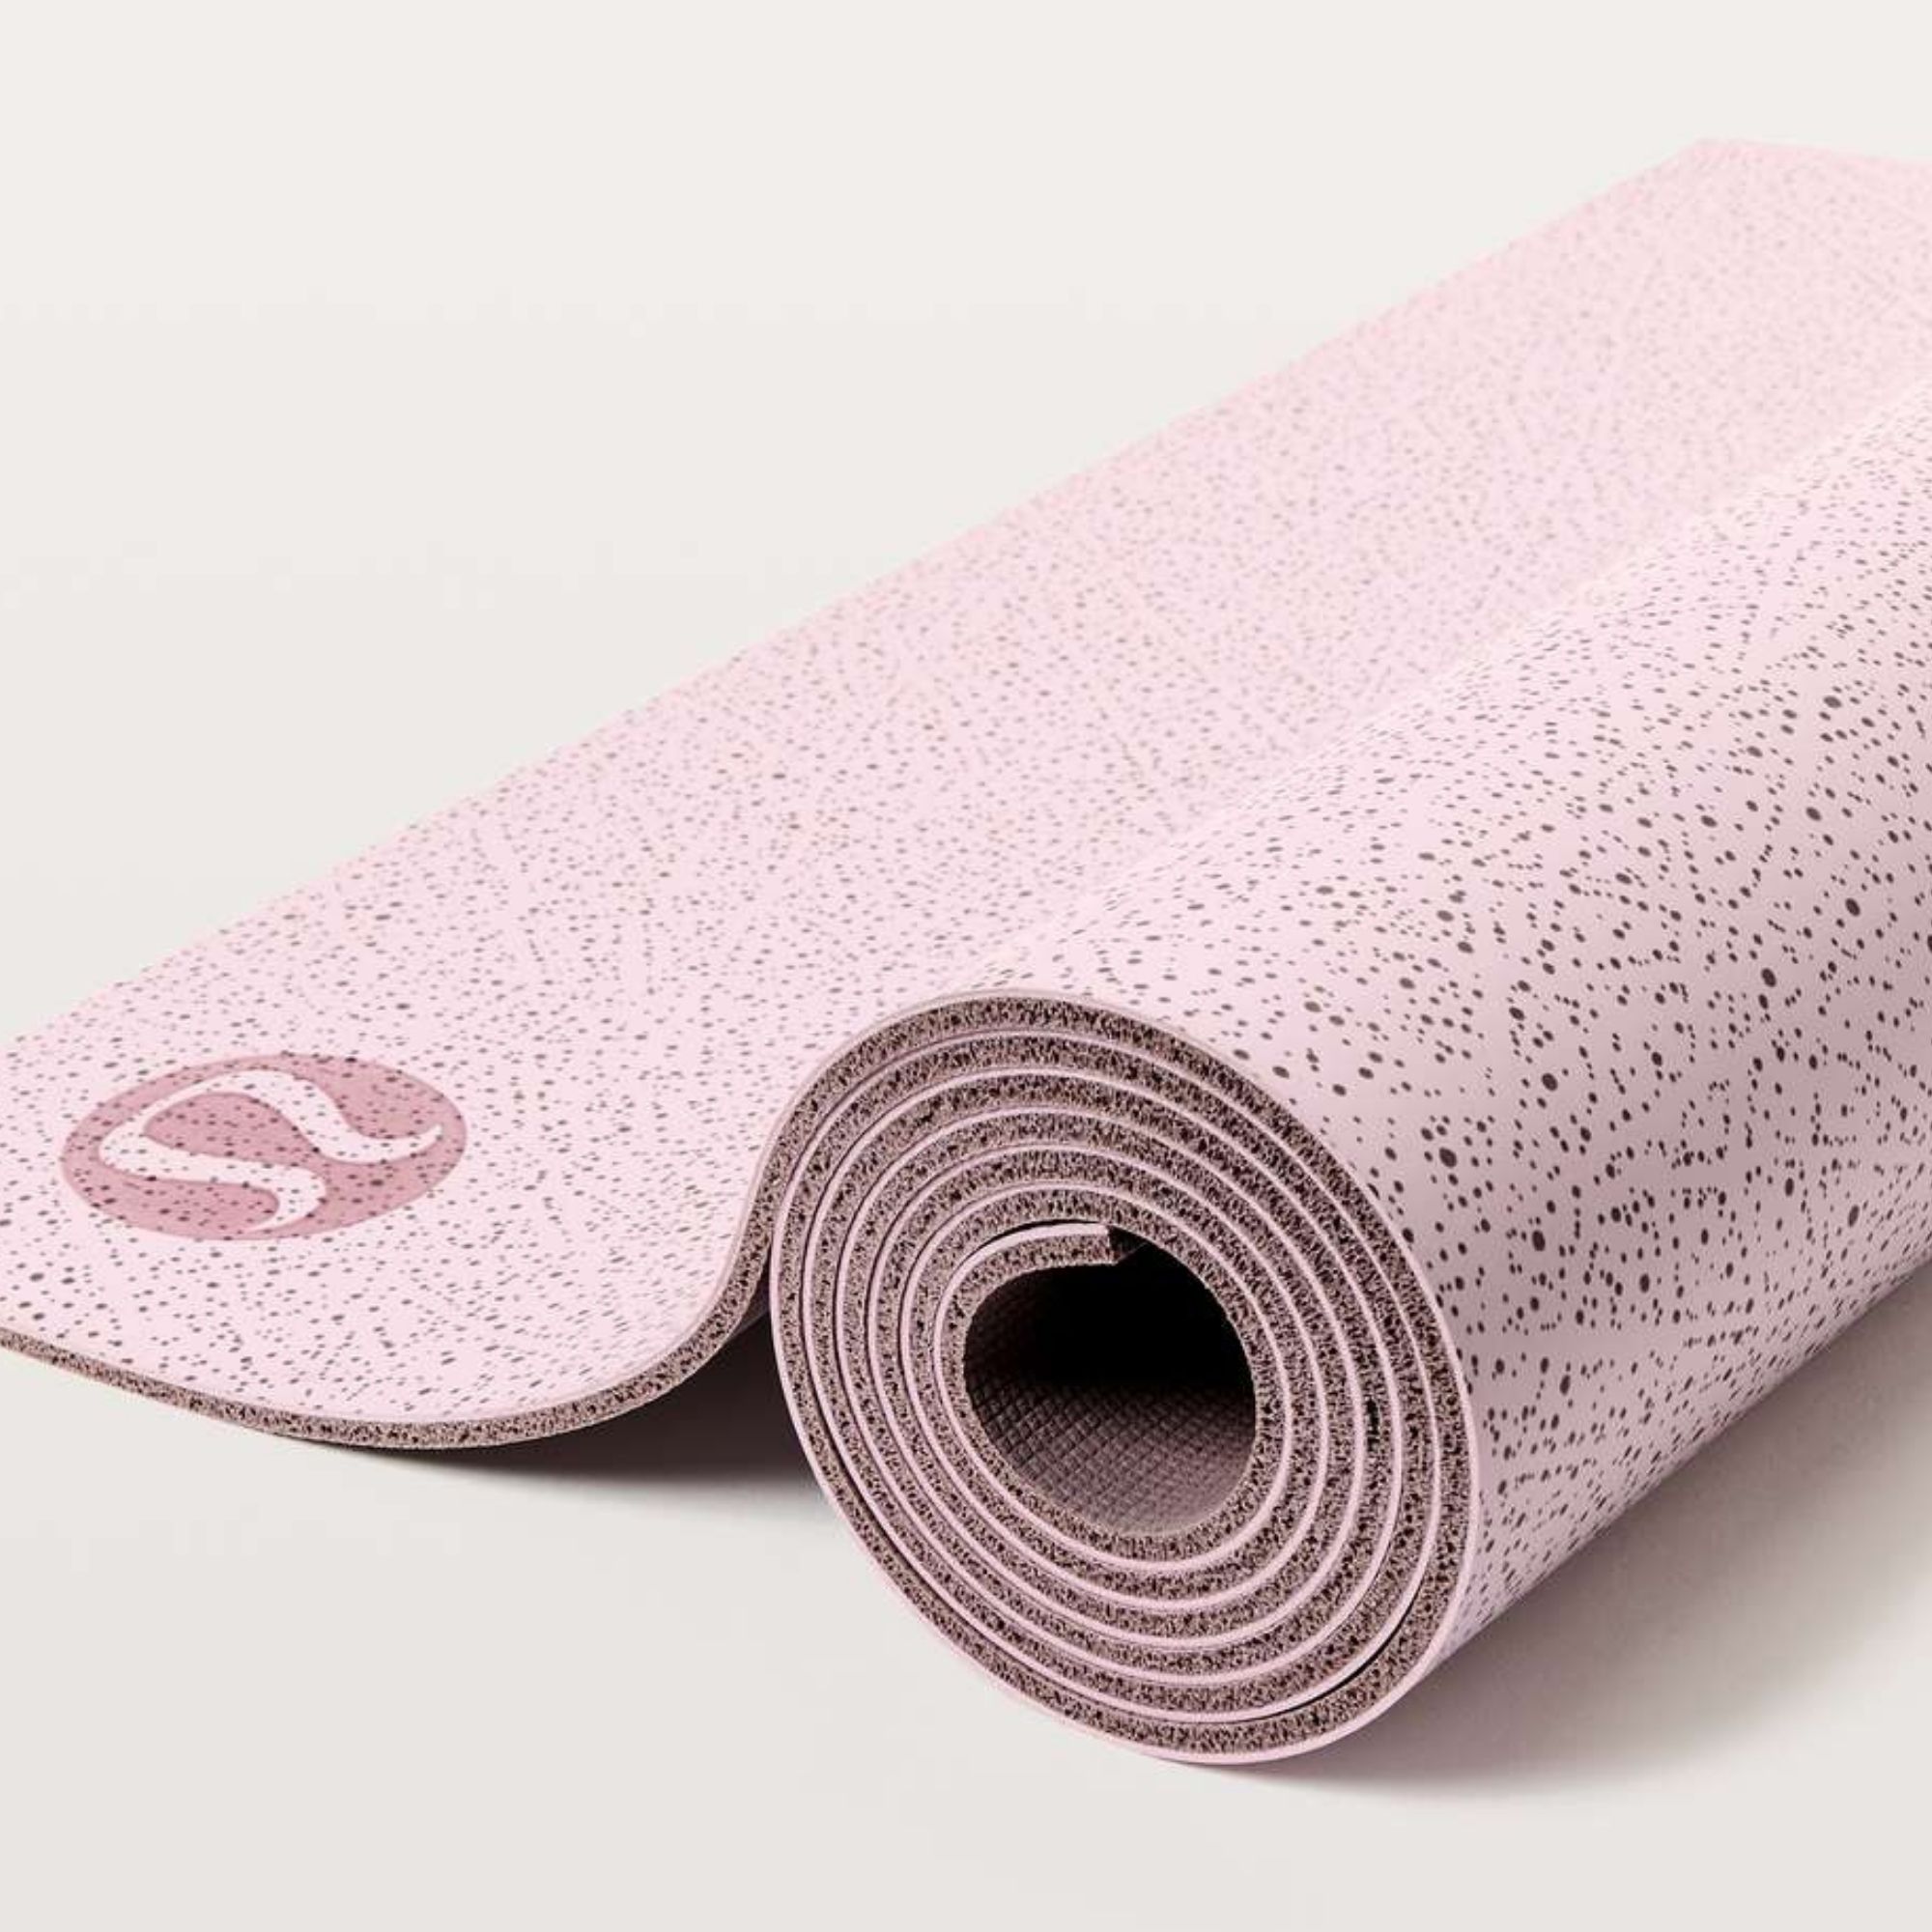 Lululemon speckled pink yoga mat